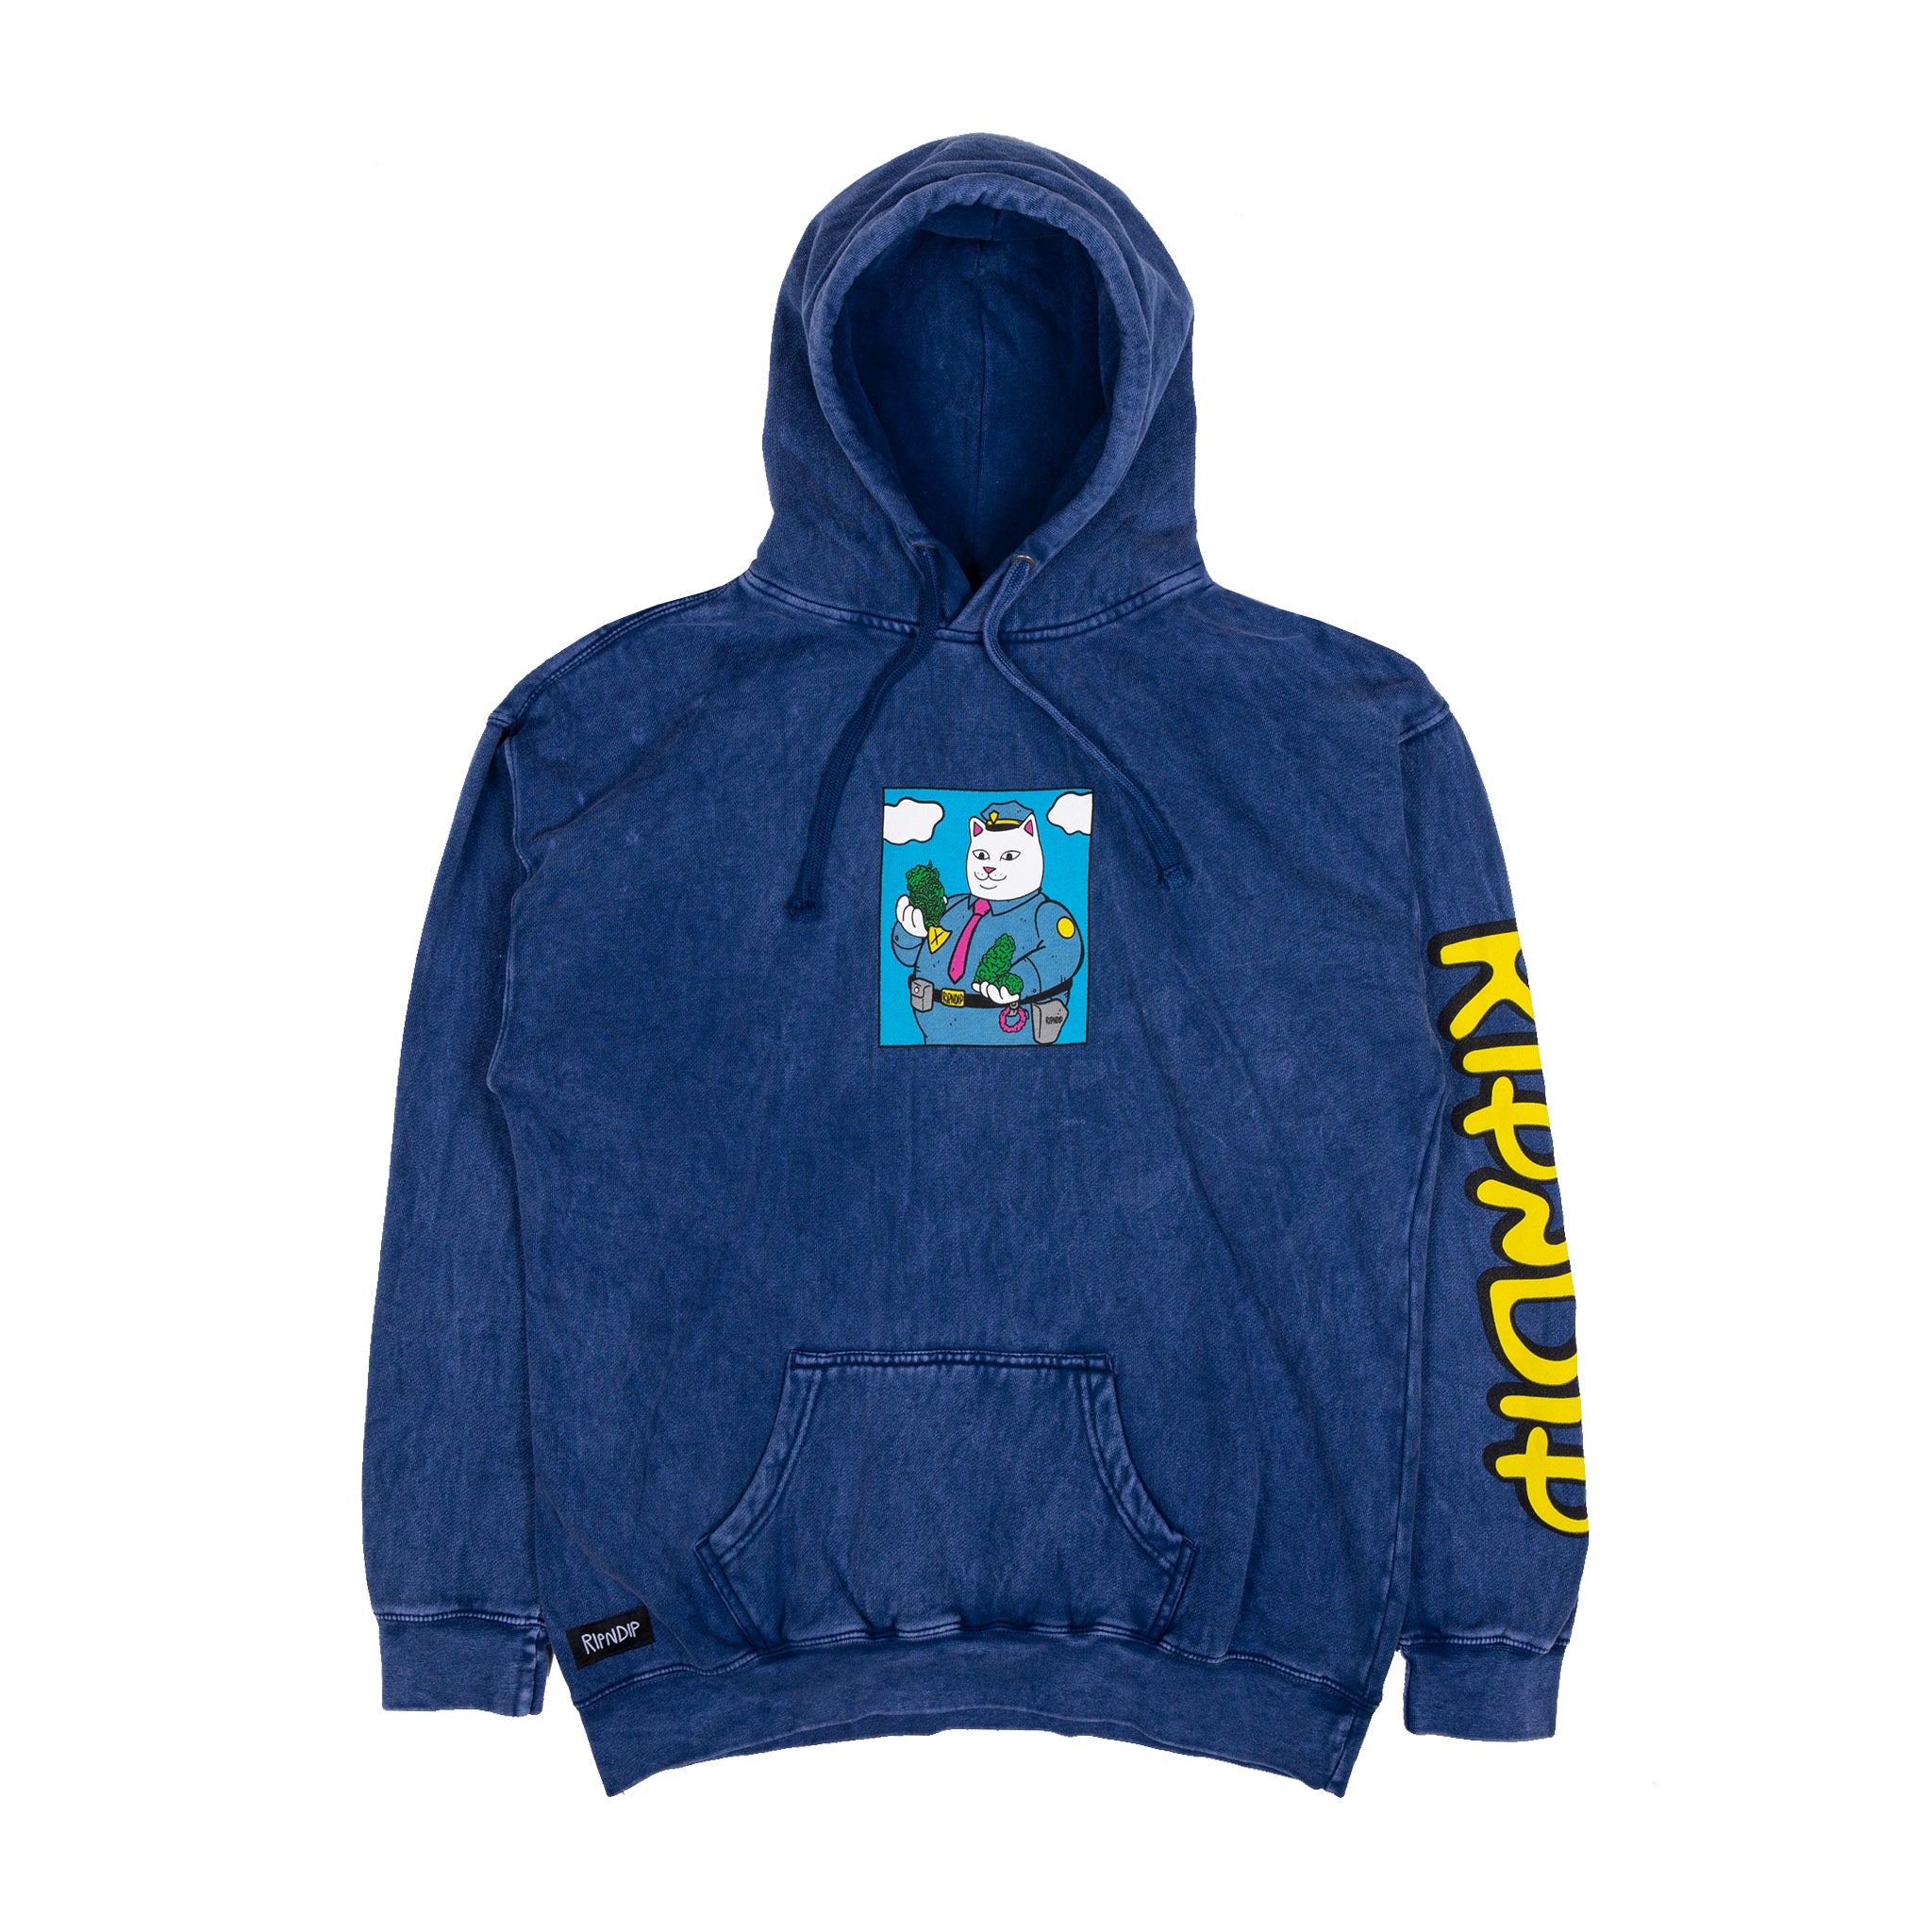 ripndip hoodie blue